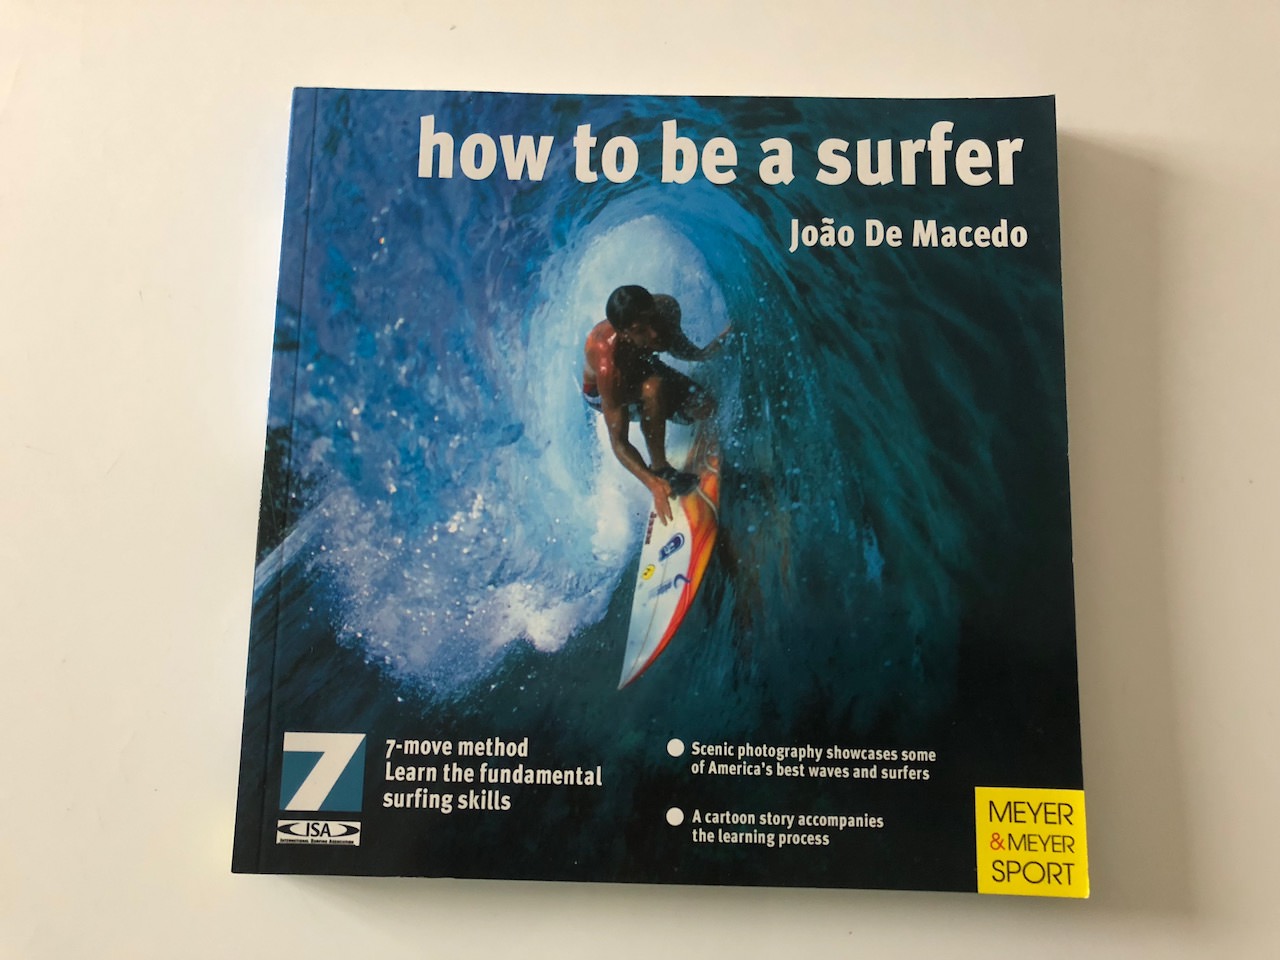 João De Macedo's book "HOW TO BE A SURFER"